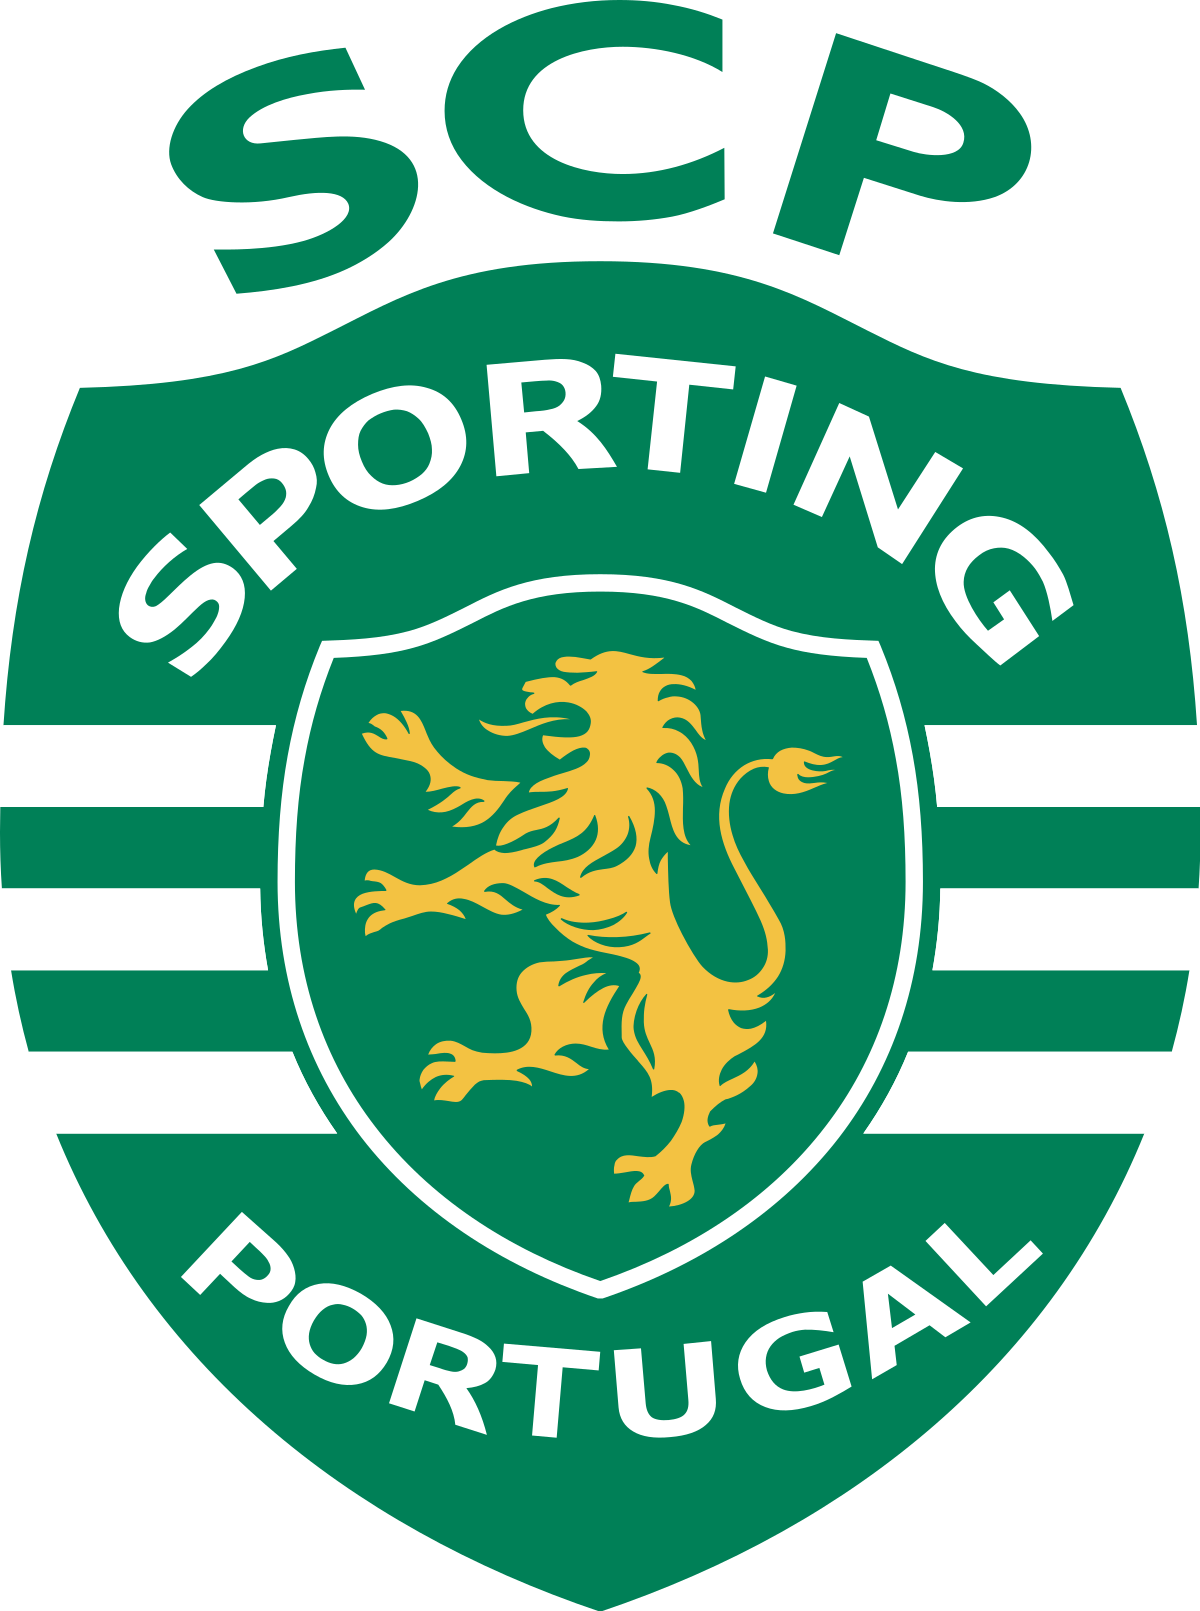 Sporting clube de portugal 0 